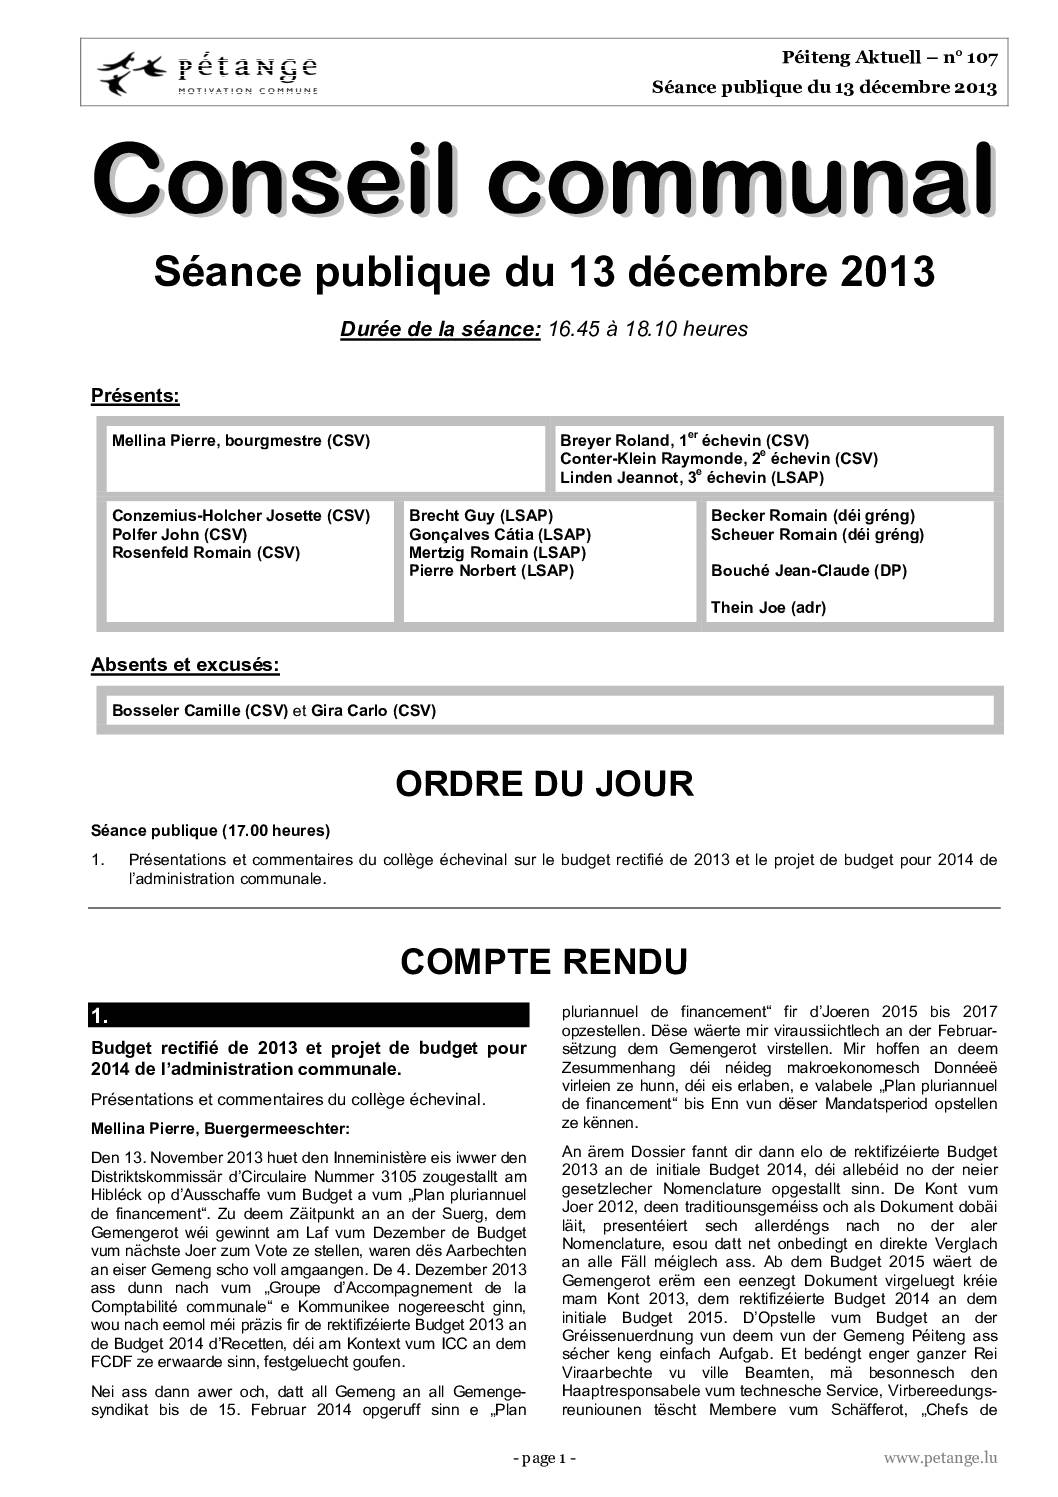 Rapport des séances du conseil communal du 13.12.2013, 16.12.2013 et 20.12.2013